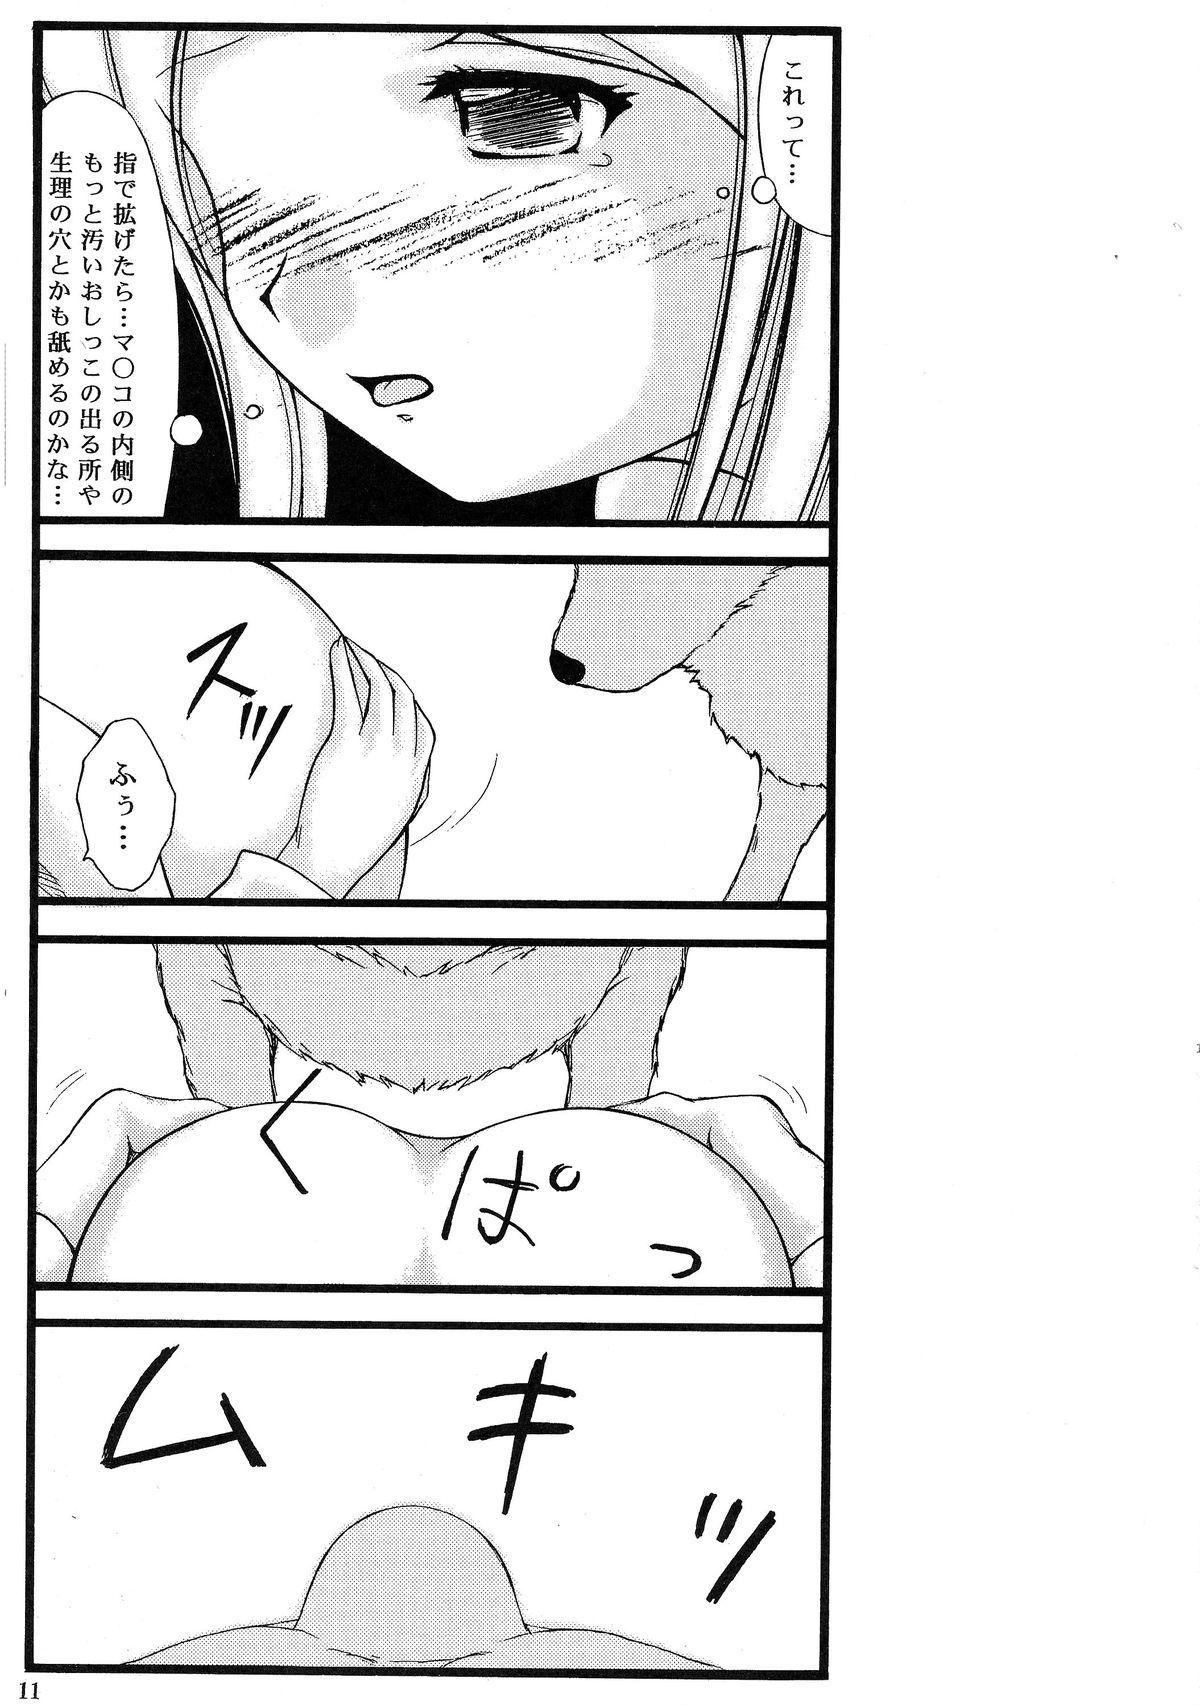 Sislovesme Inu to Shoujo Stockings - Yurikuma arashi Casado - Page 10